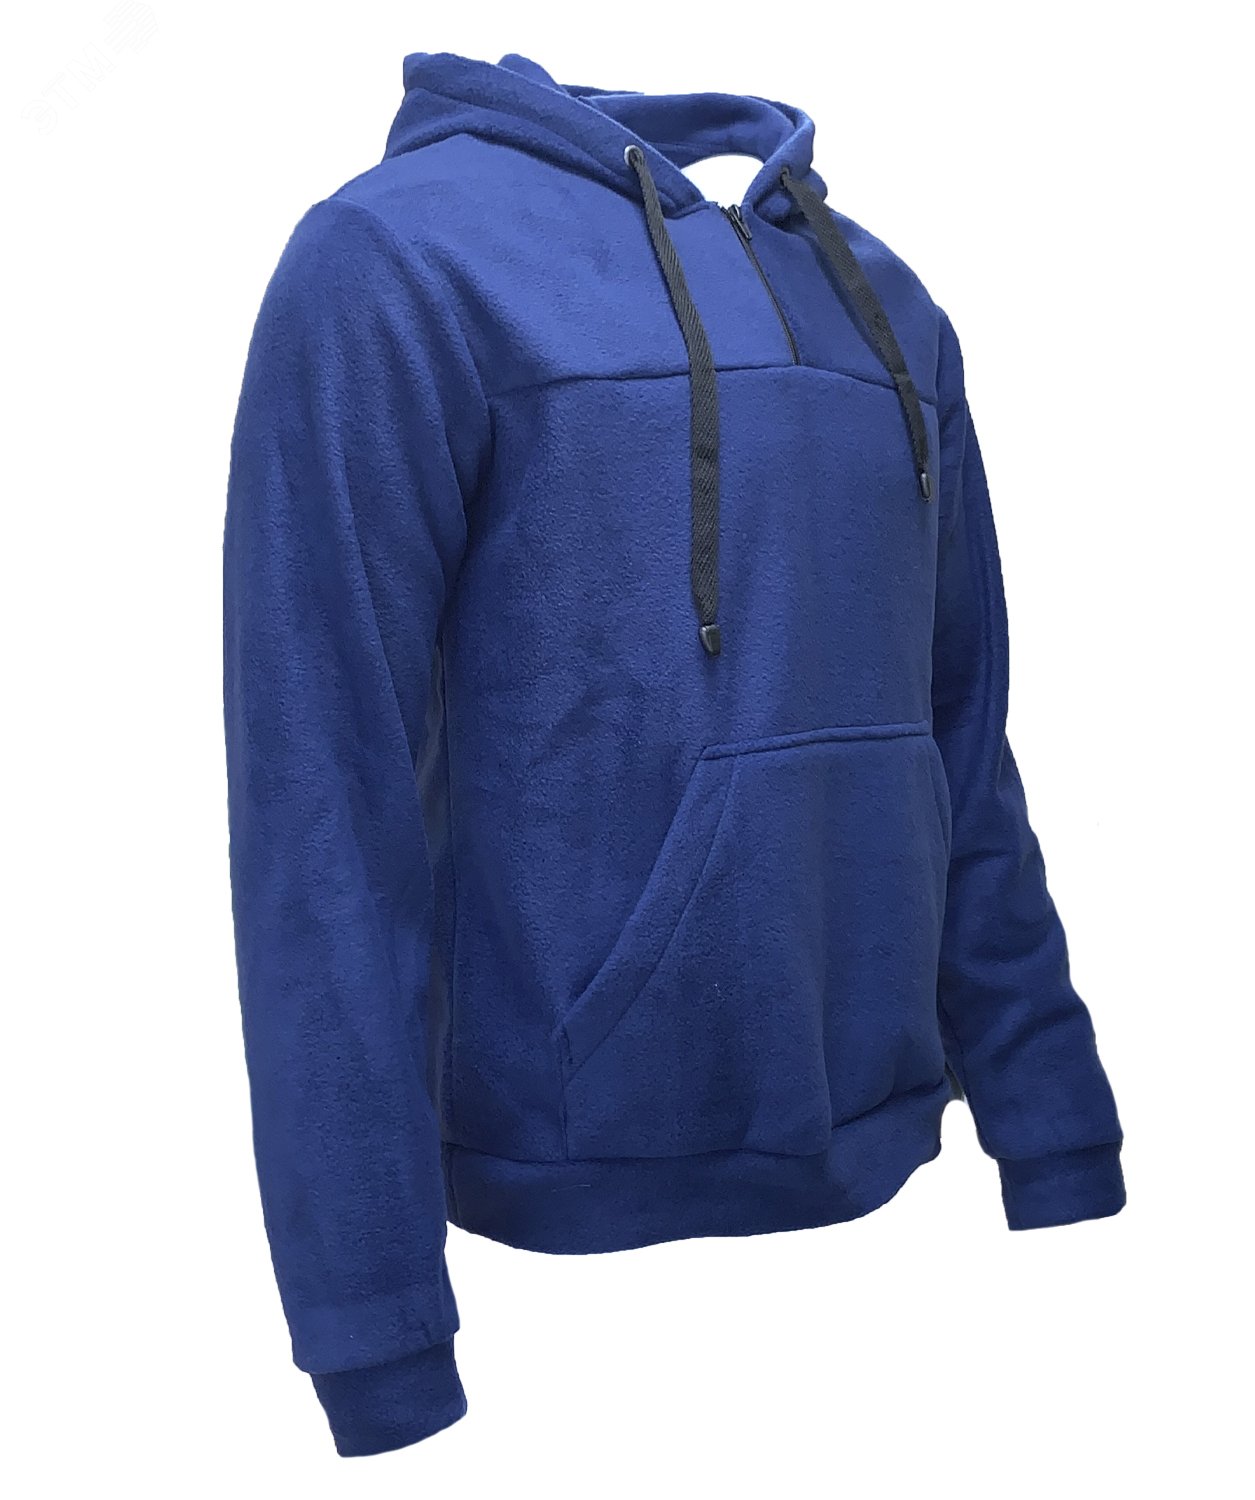 Куртка Etalon Travel TM Sprut с капюшоном, цвет темно-синий 56-58 112-116/182-188 130793 Эталон-Спецодежда - превью 2